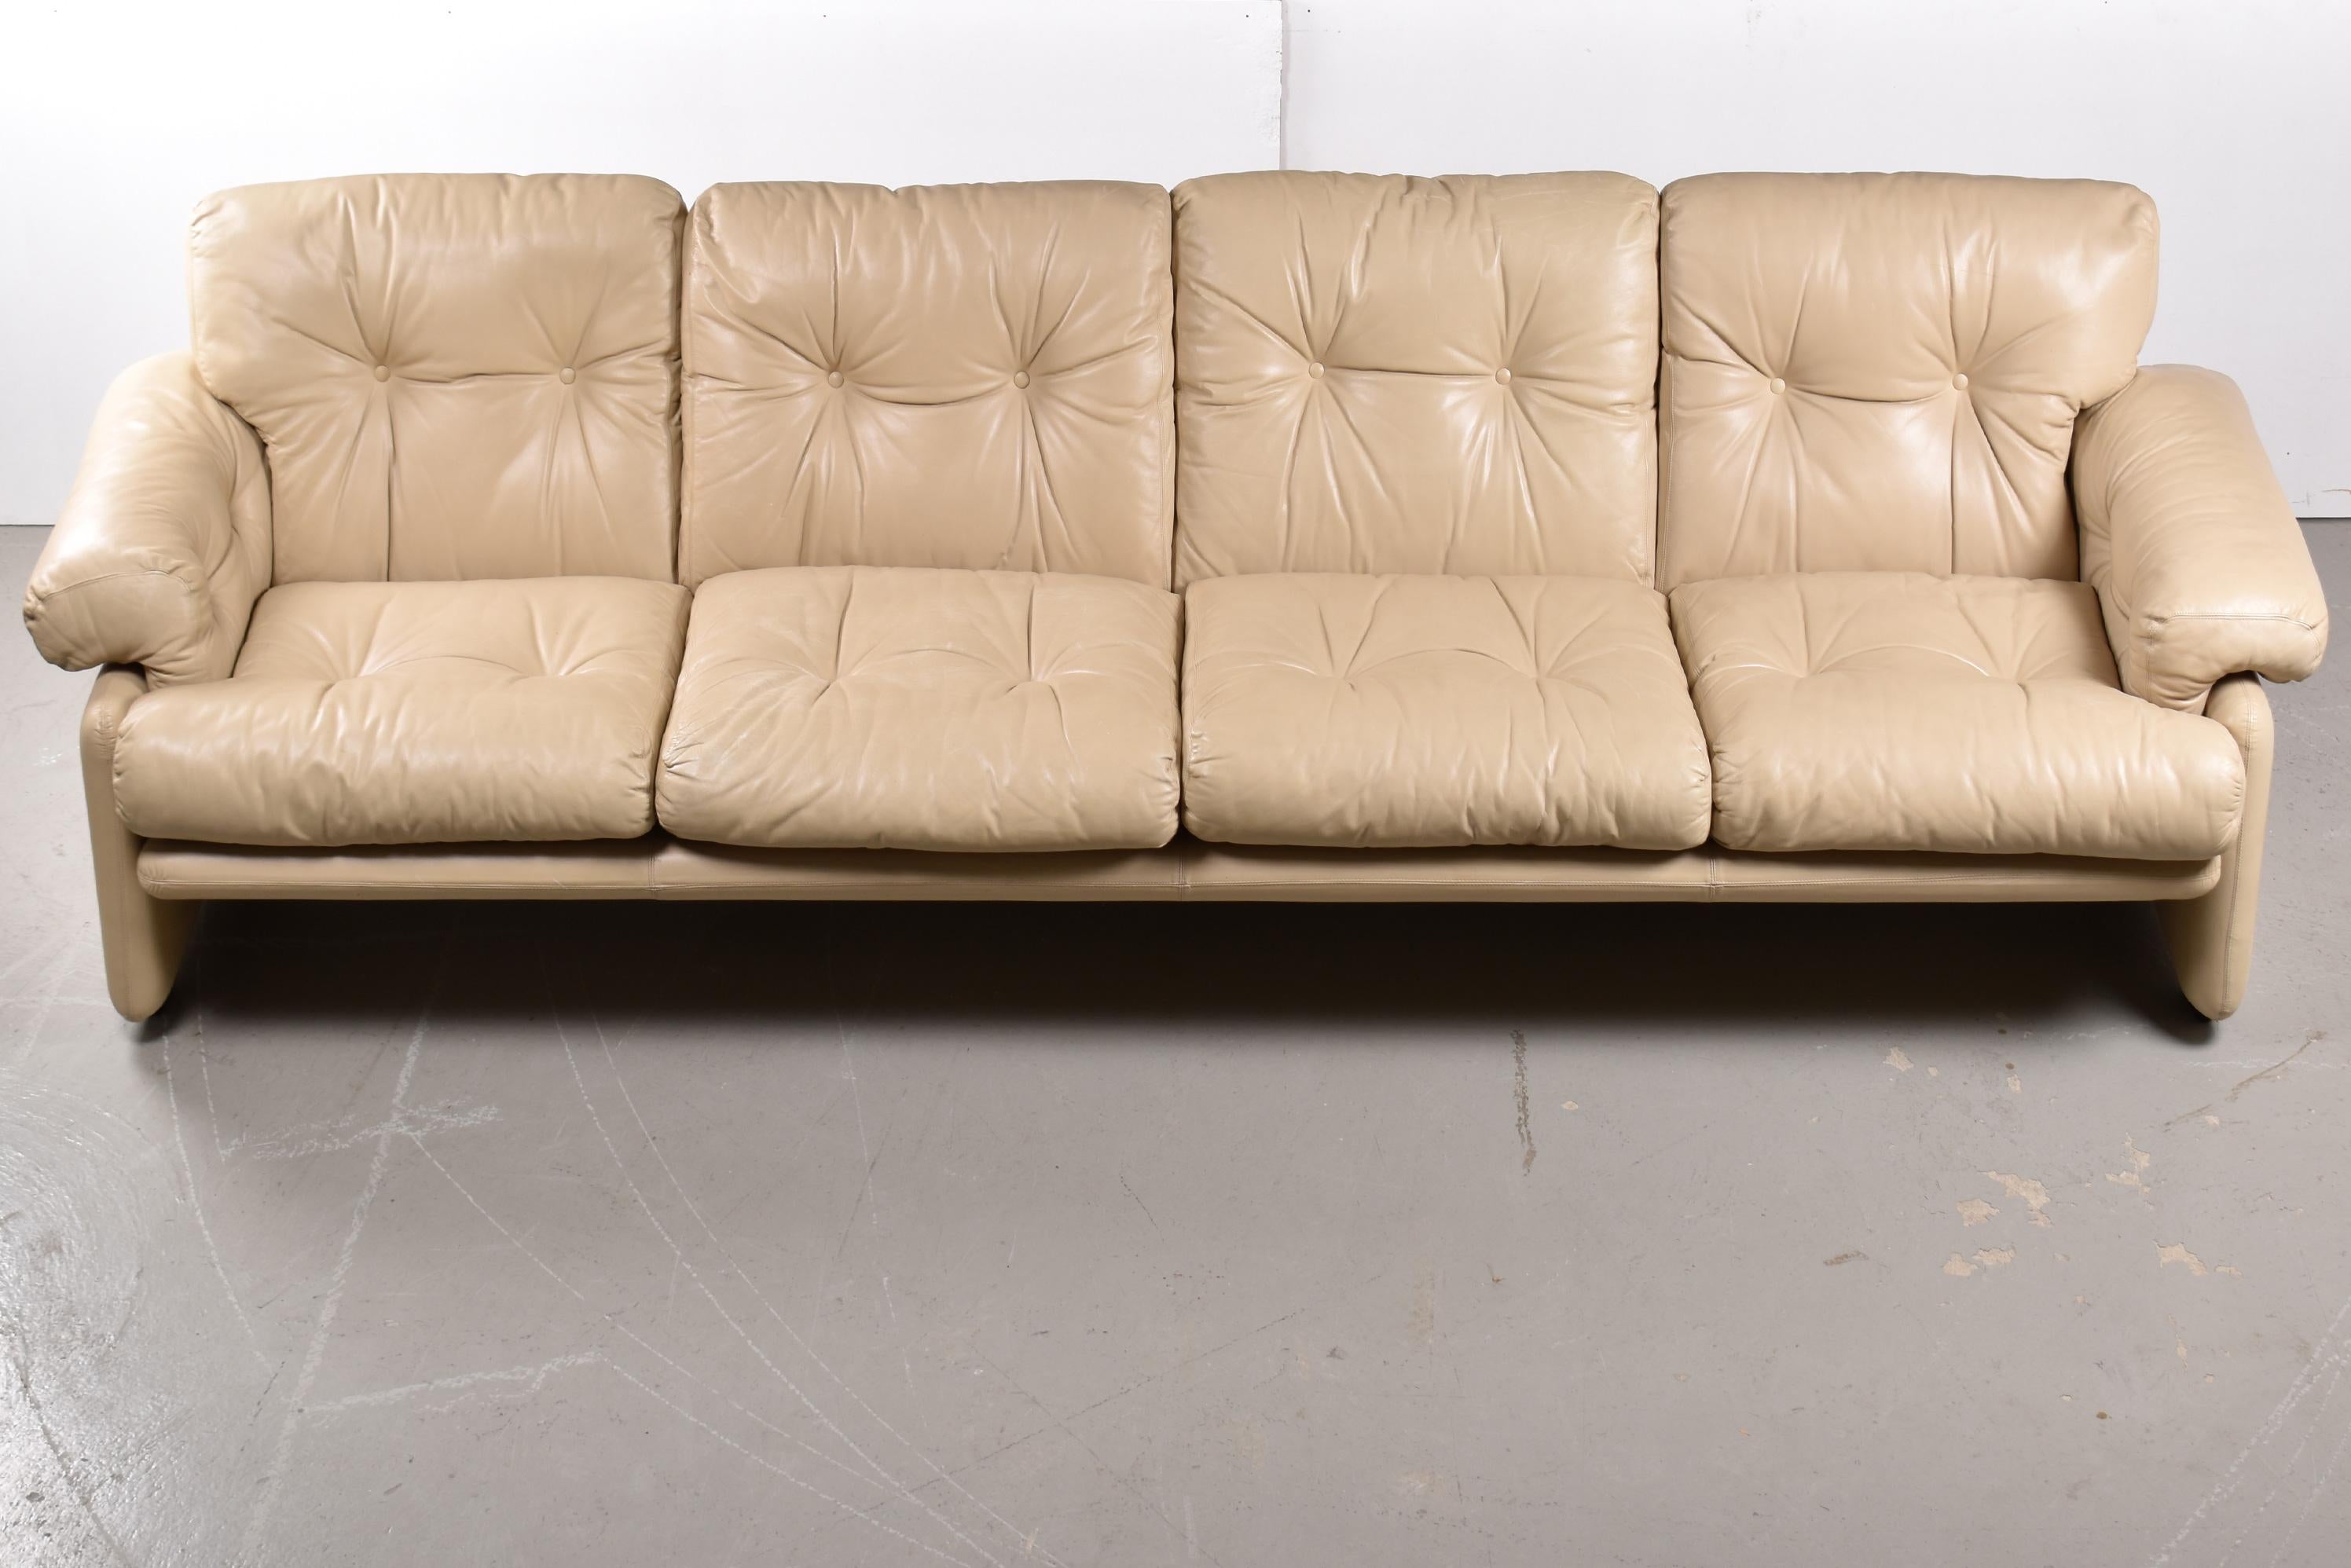 Joli canapé quatre places en cuir ivoire, conçu par Tobia et Afra Scarpa.
Très confortable avec ses coussins profonds et moelleux et son cuir de première qualité, ce canapé est le fleuron de la gamme 